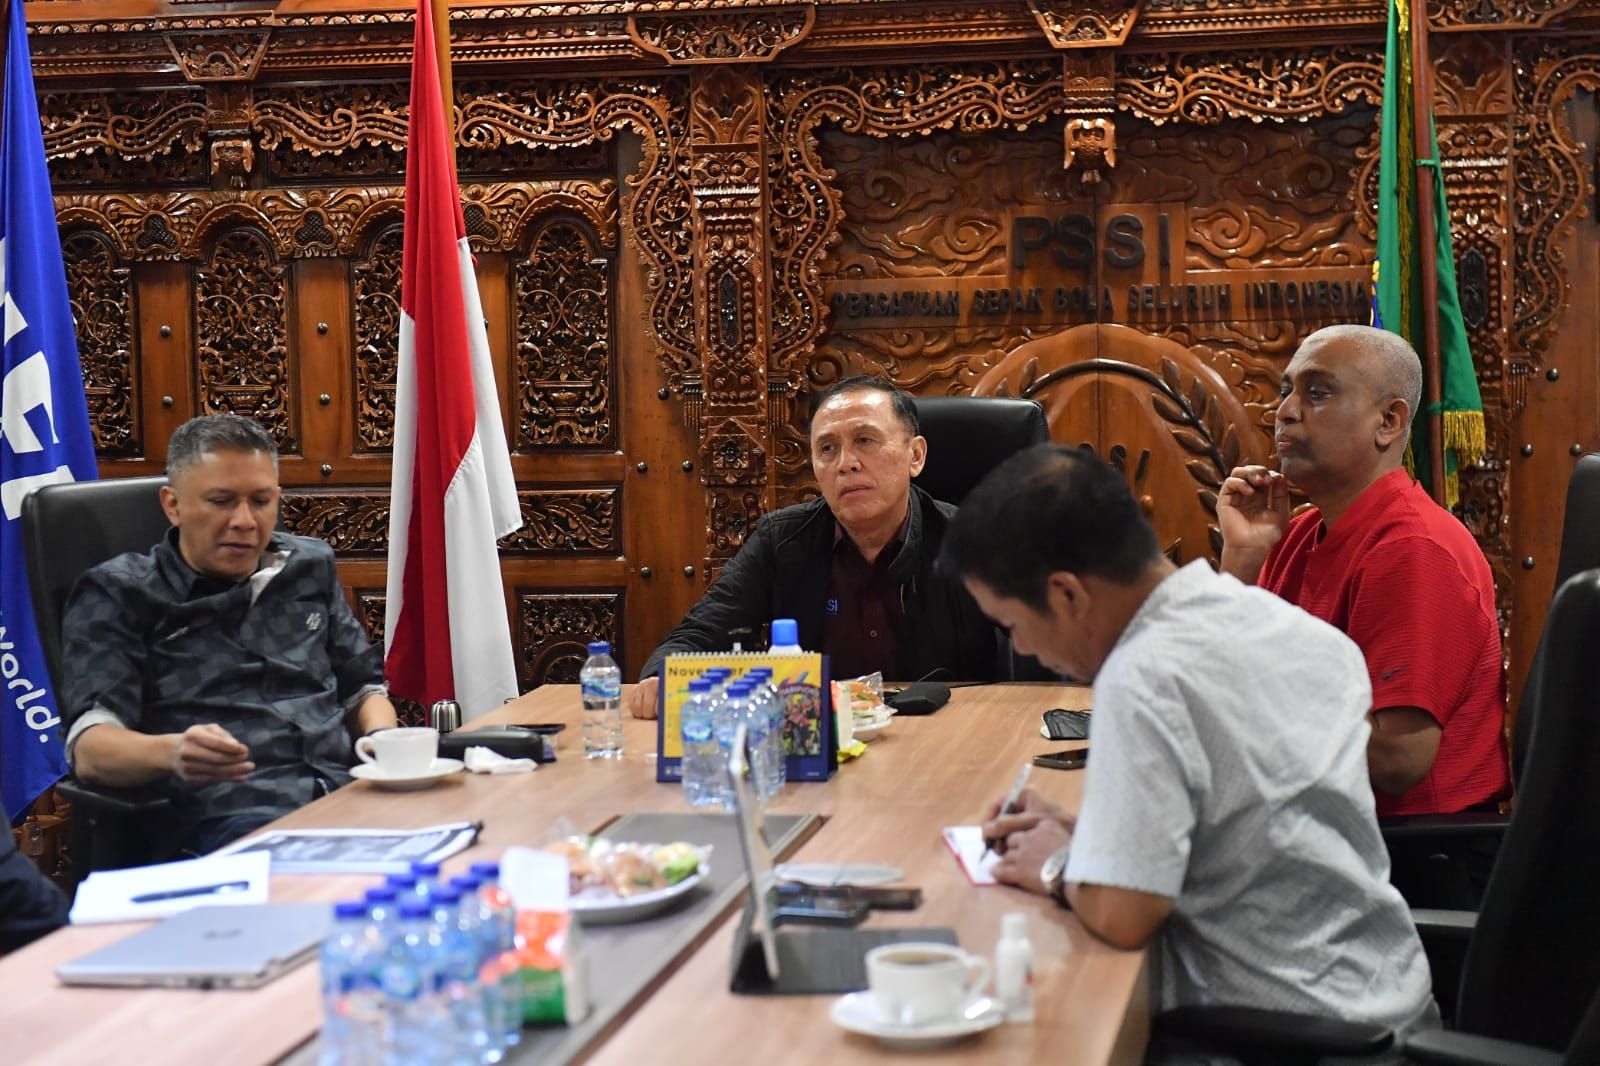 Ketua Umum PSSI, Mochamad Iriawan (dua dari kiri) memimpin rapat yang membahas wasit di kompetisi sepak bola nasional.